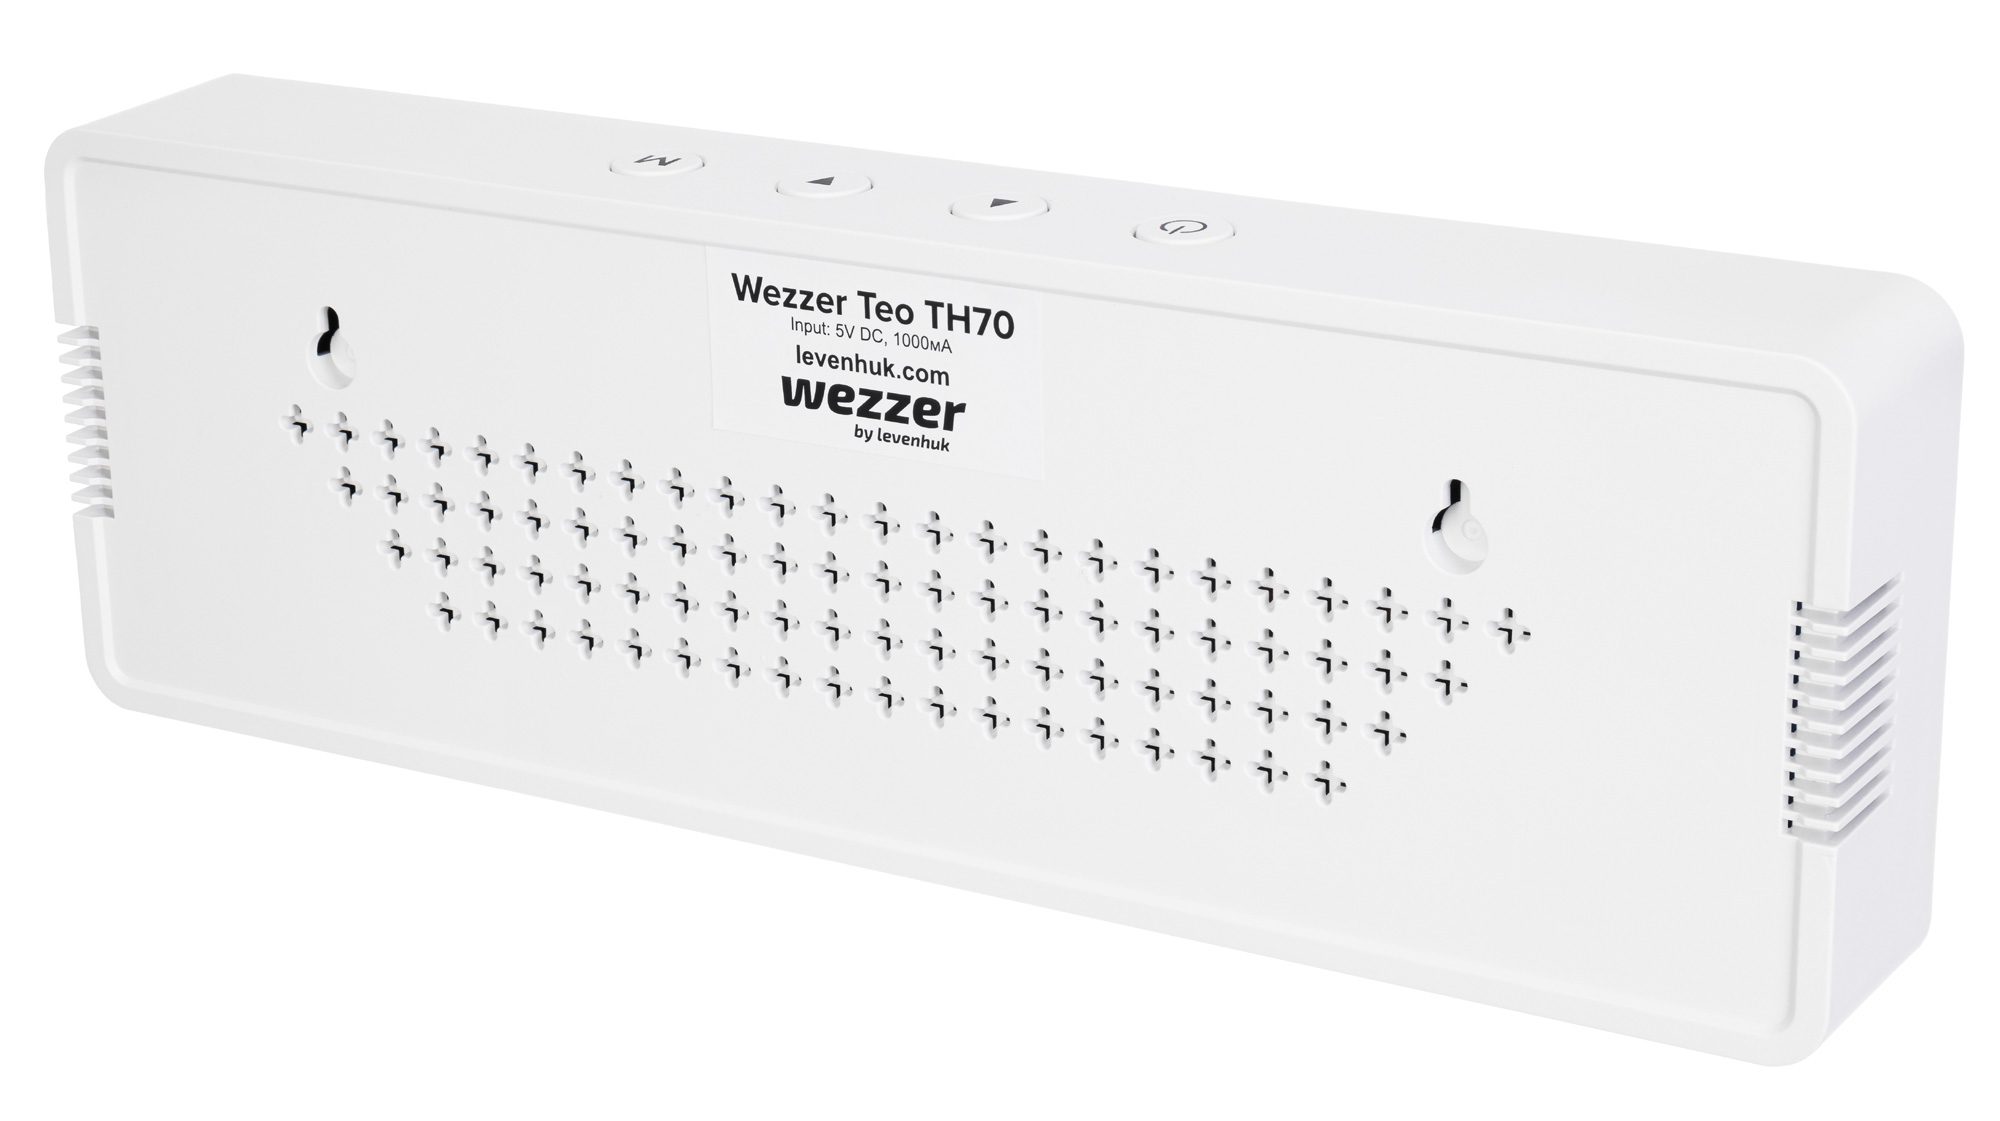 CLZ192 Levenhuk Wezzer Teo TH70 Kirlilik Monitörü Termo Higrometre (4172)